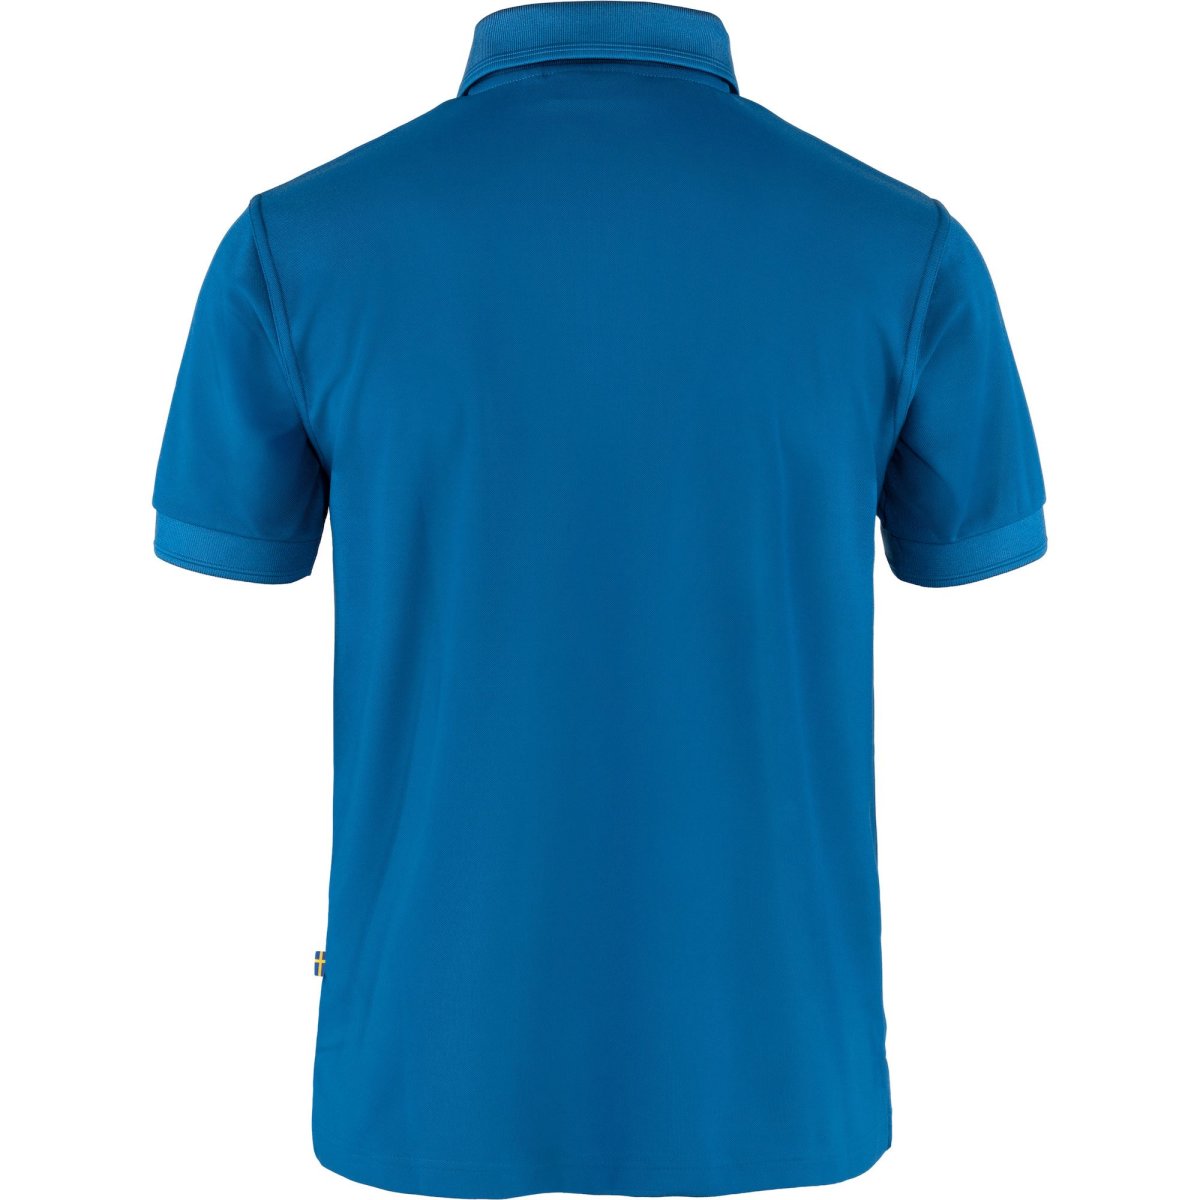 Fj&auml;llr&auml;ven Crowley Polo Pique Shirt 81783 alpine blue Herren Funktionsshirt